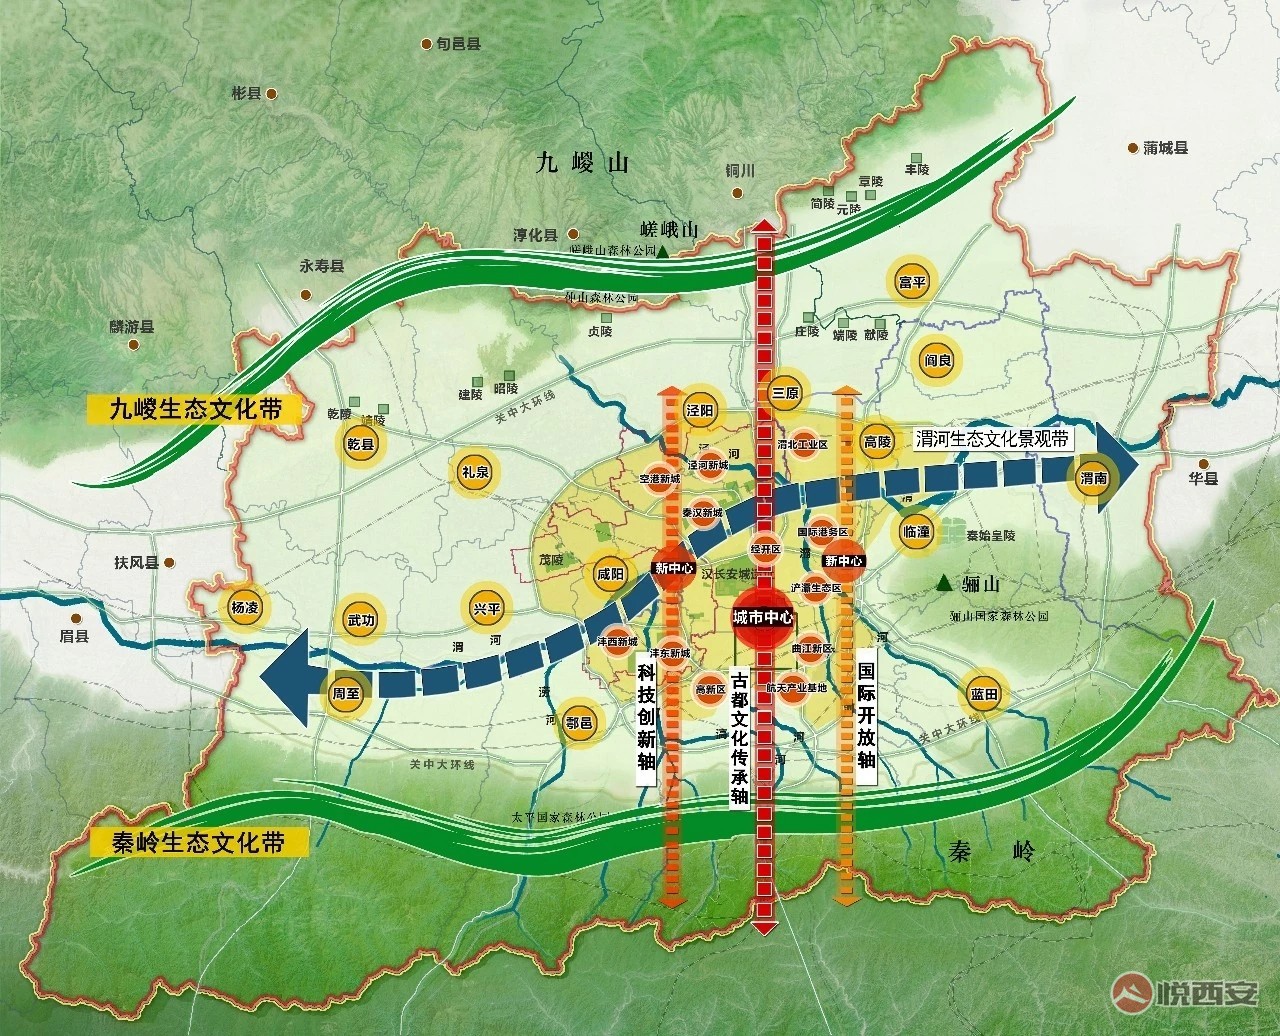 城市中国-悦西安-吐槽一下上海公积金-荣耀西安论坛-(9)